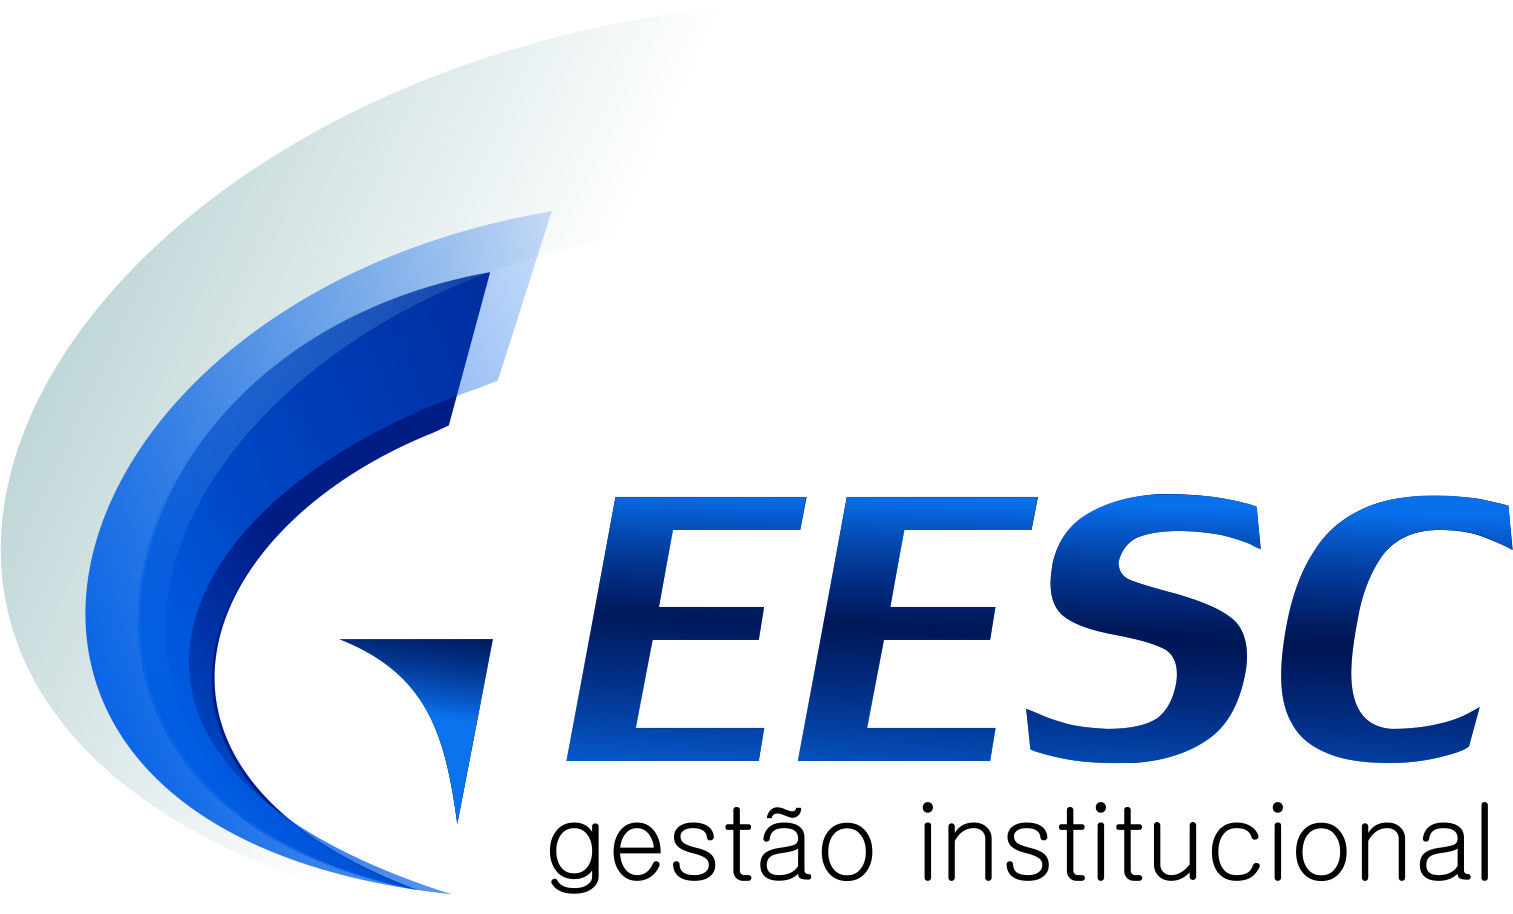 eesc geesc logo